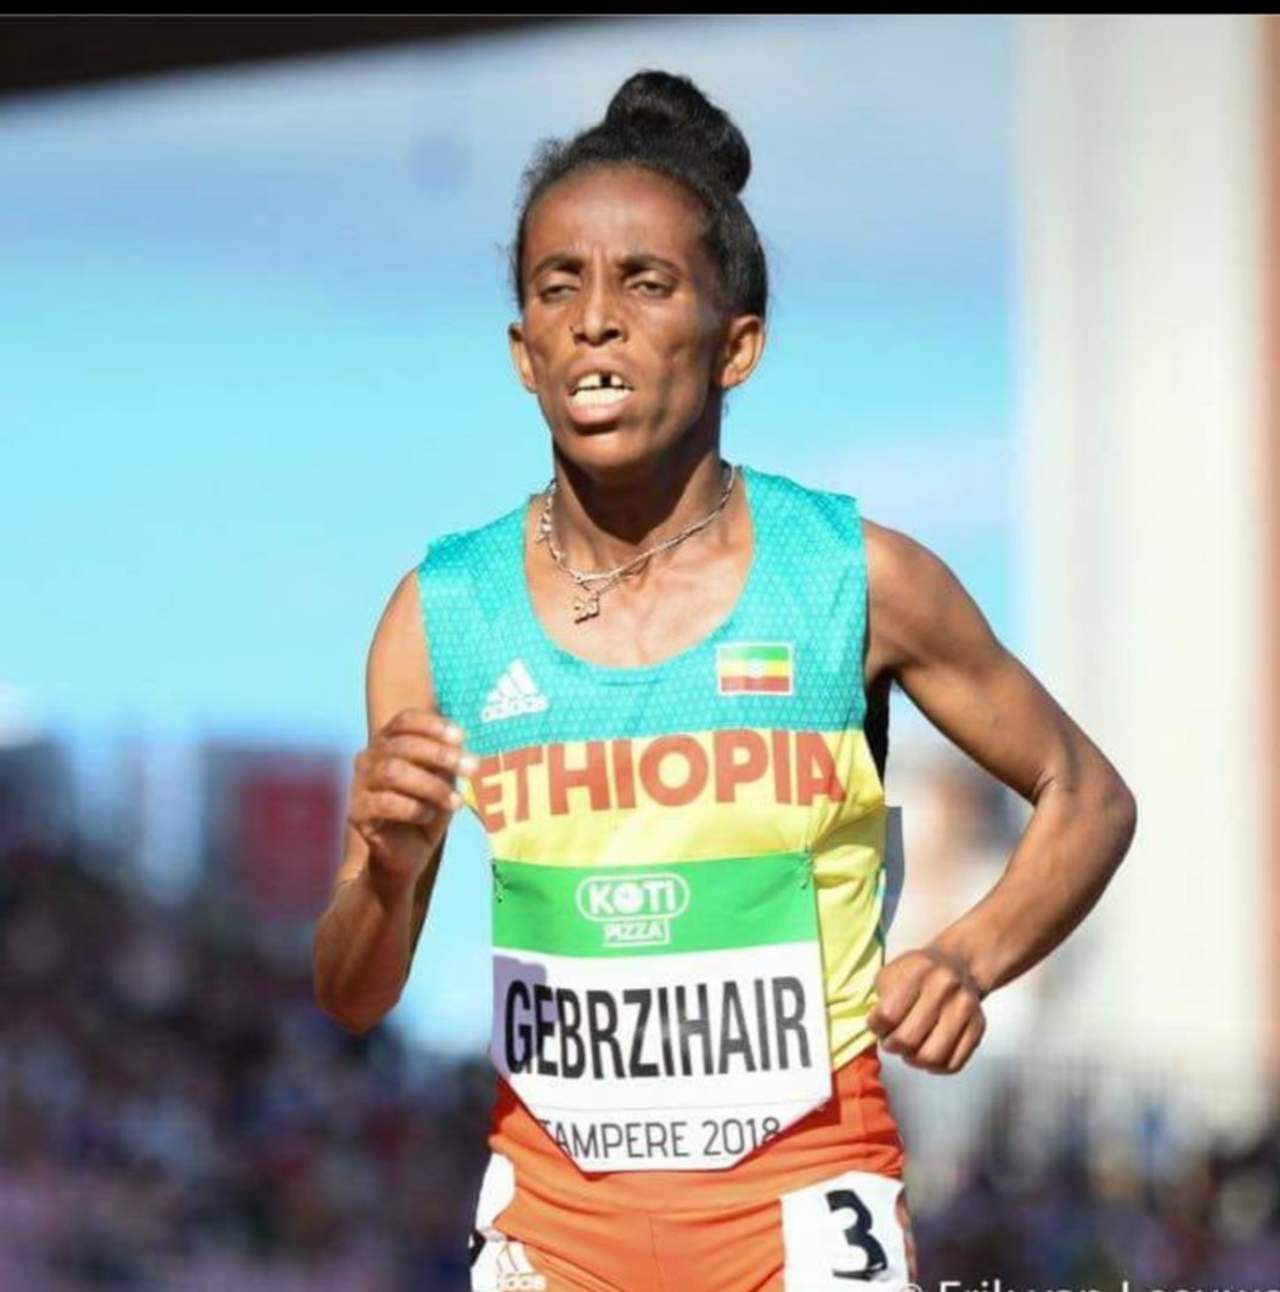 La atleta etíope desató la polémica por su aspecto físico. (Cortesía)